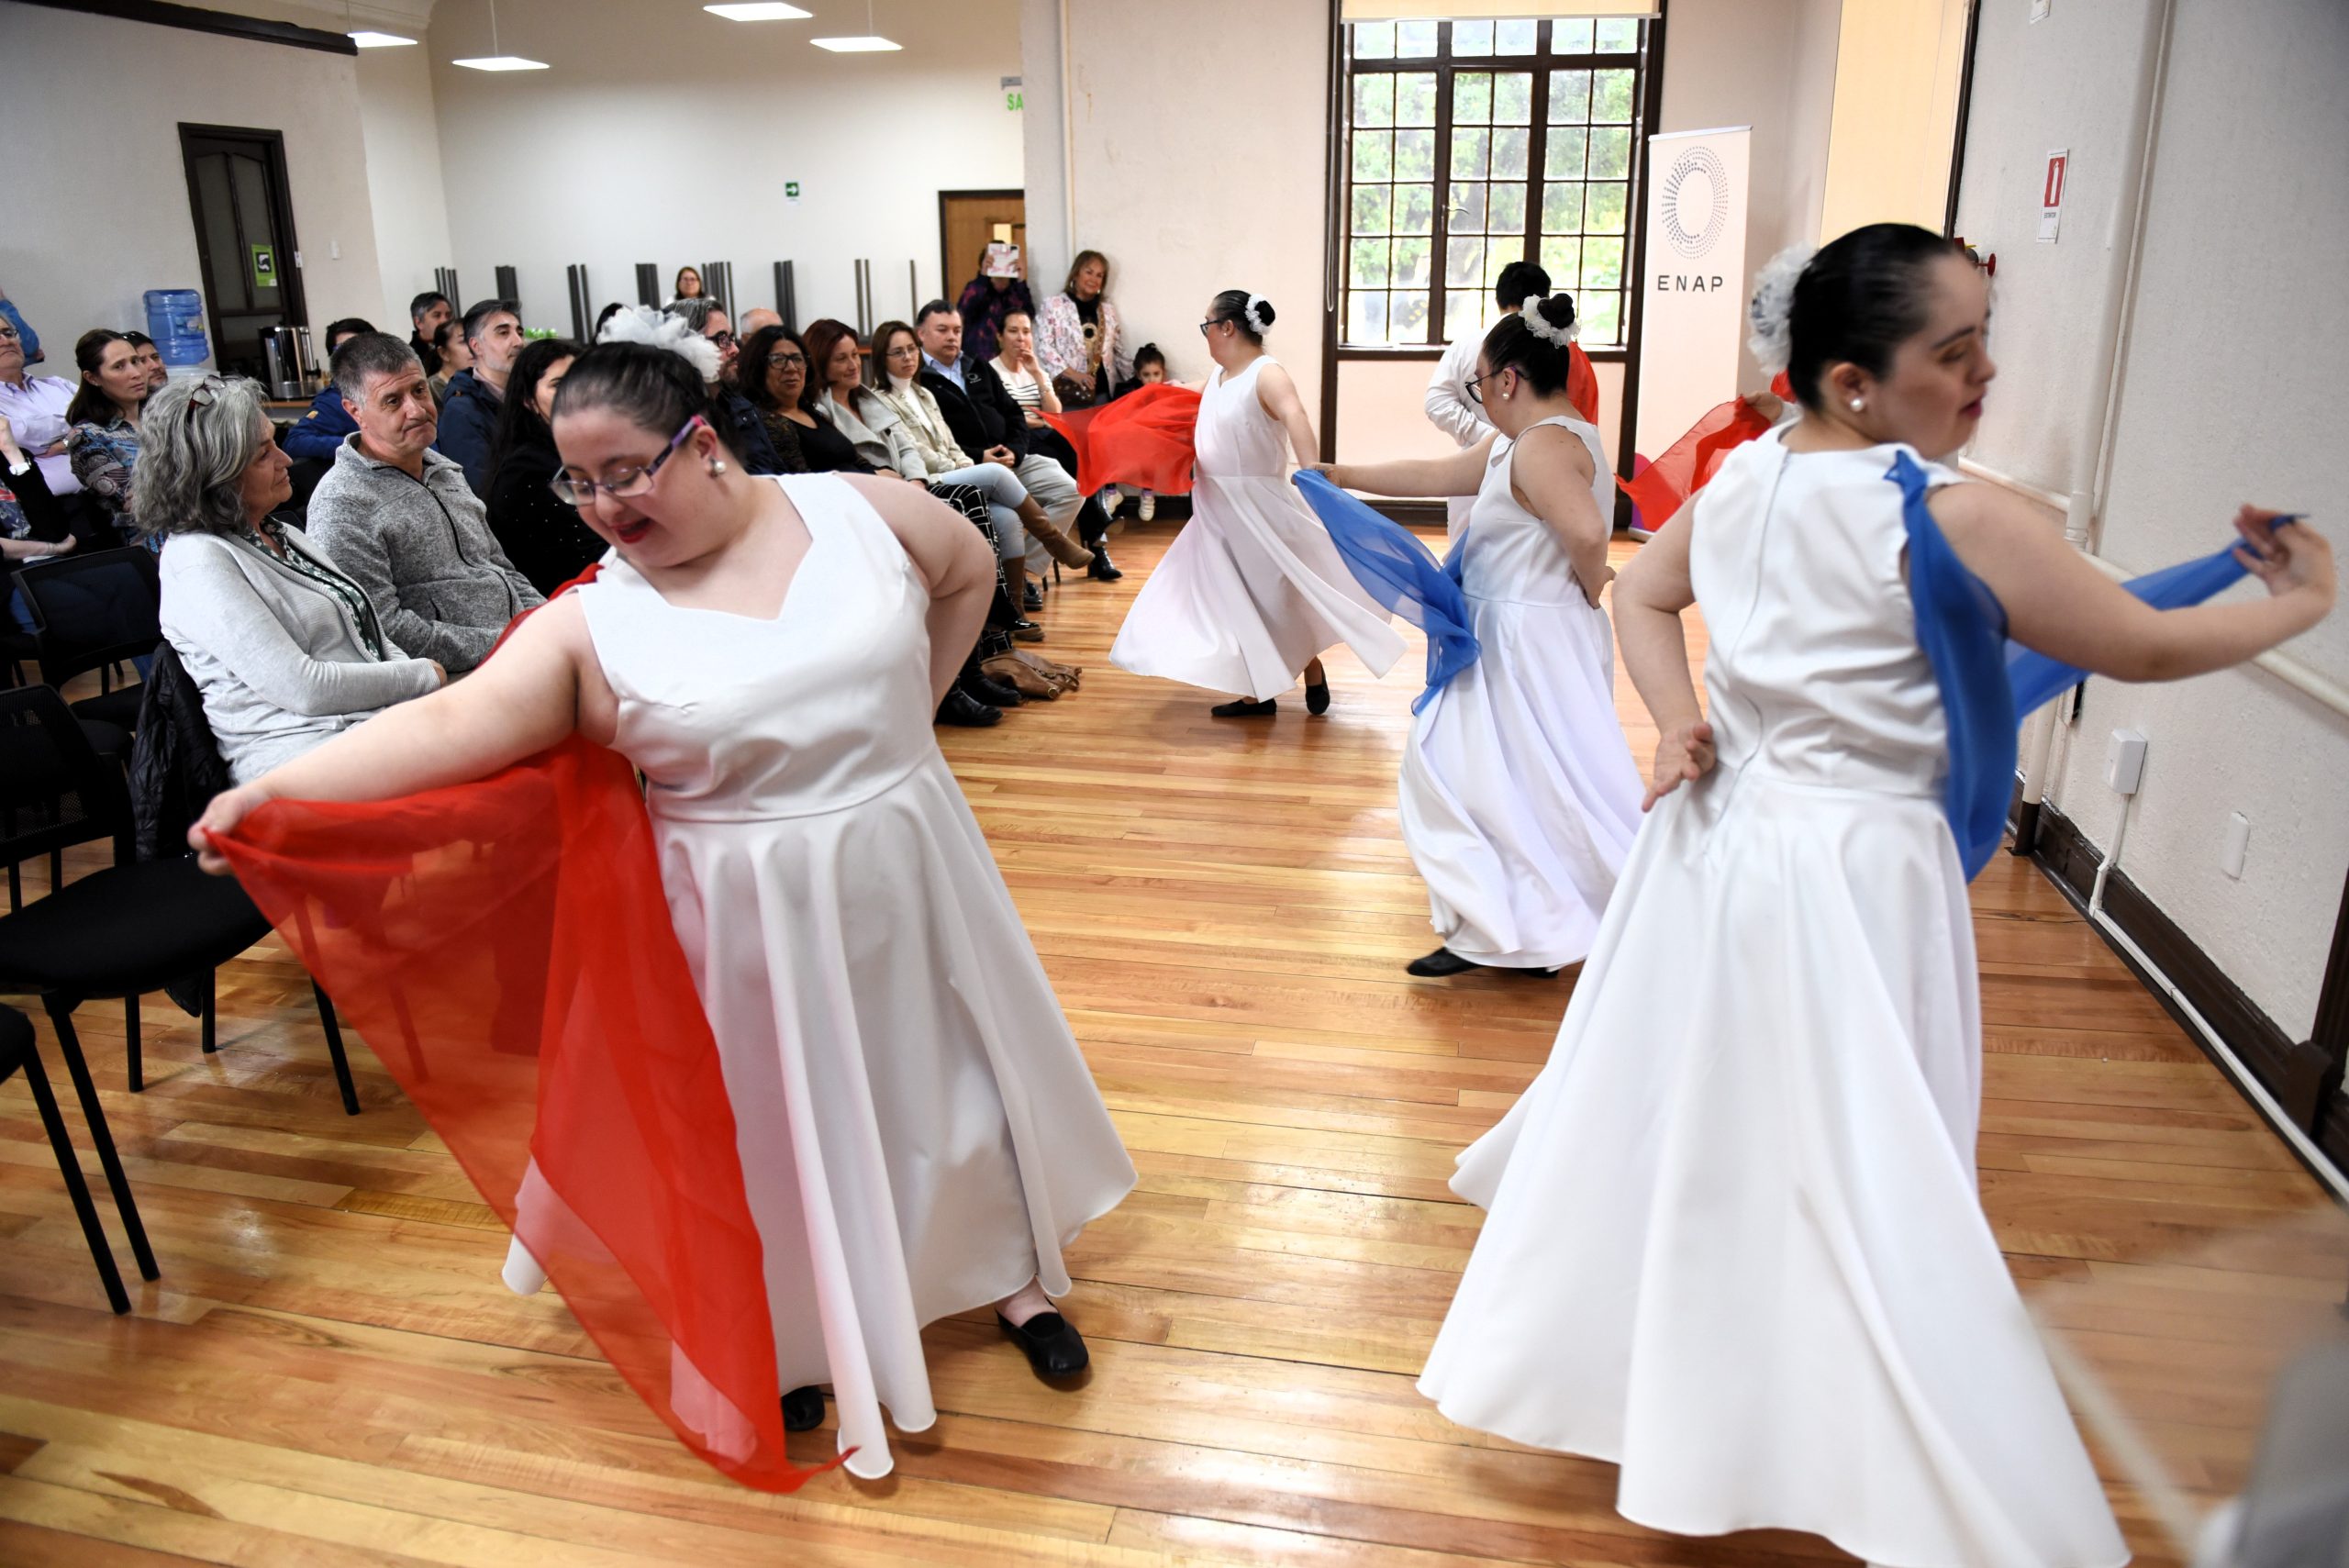 ENAP Magallanes conmemora Día de la Discapacidad con acto artístico cultural